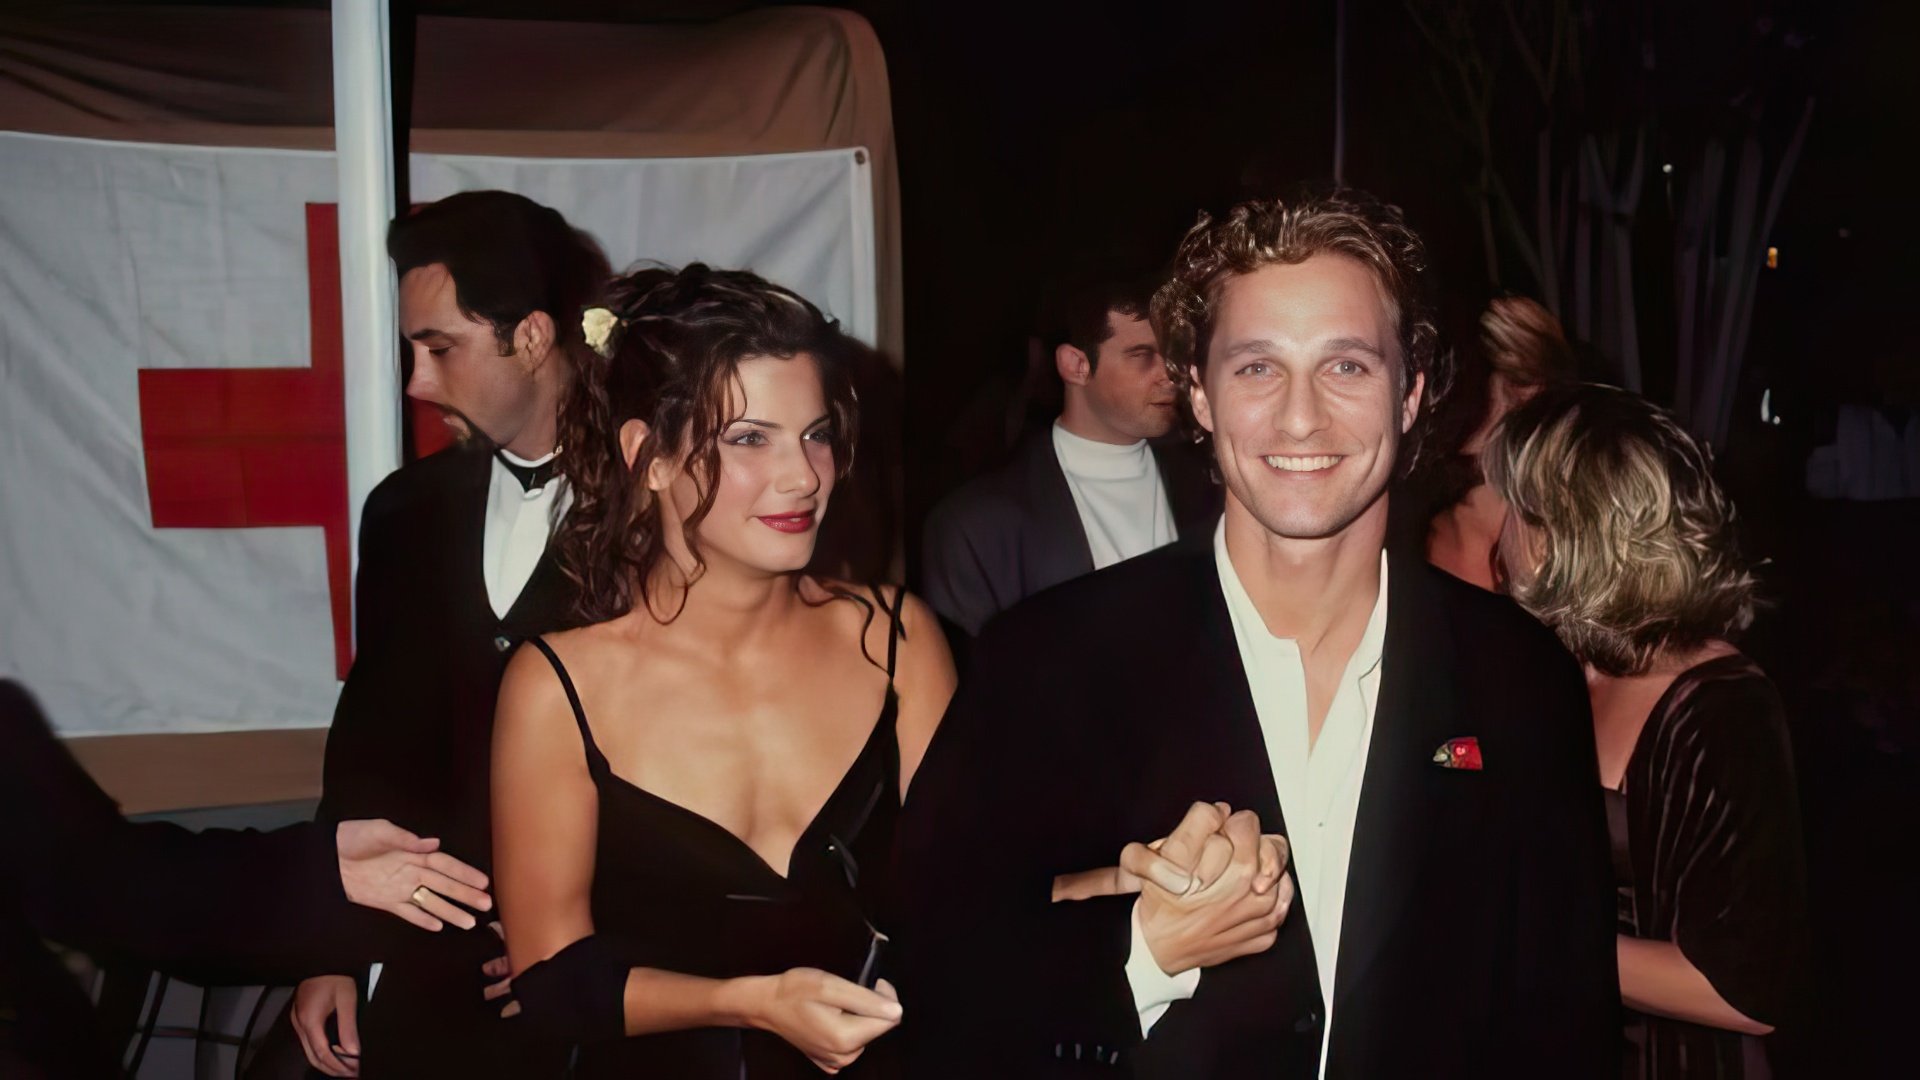 Matthew McConaughey and Sandra Bullock (1997)